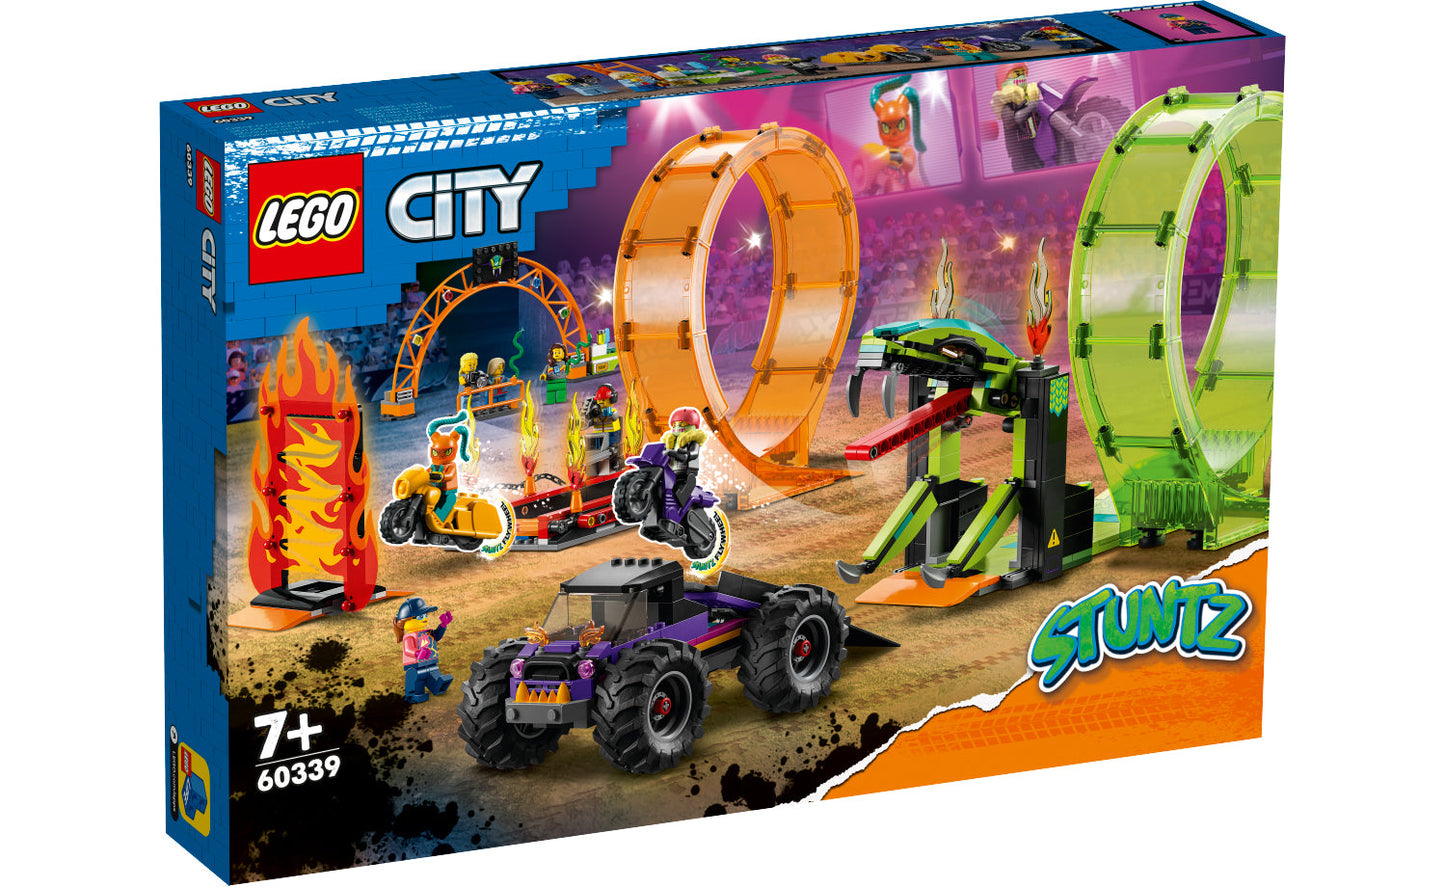 Lego City Double Loop Stunt Arena - 60339